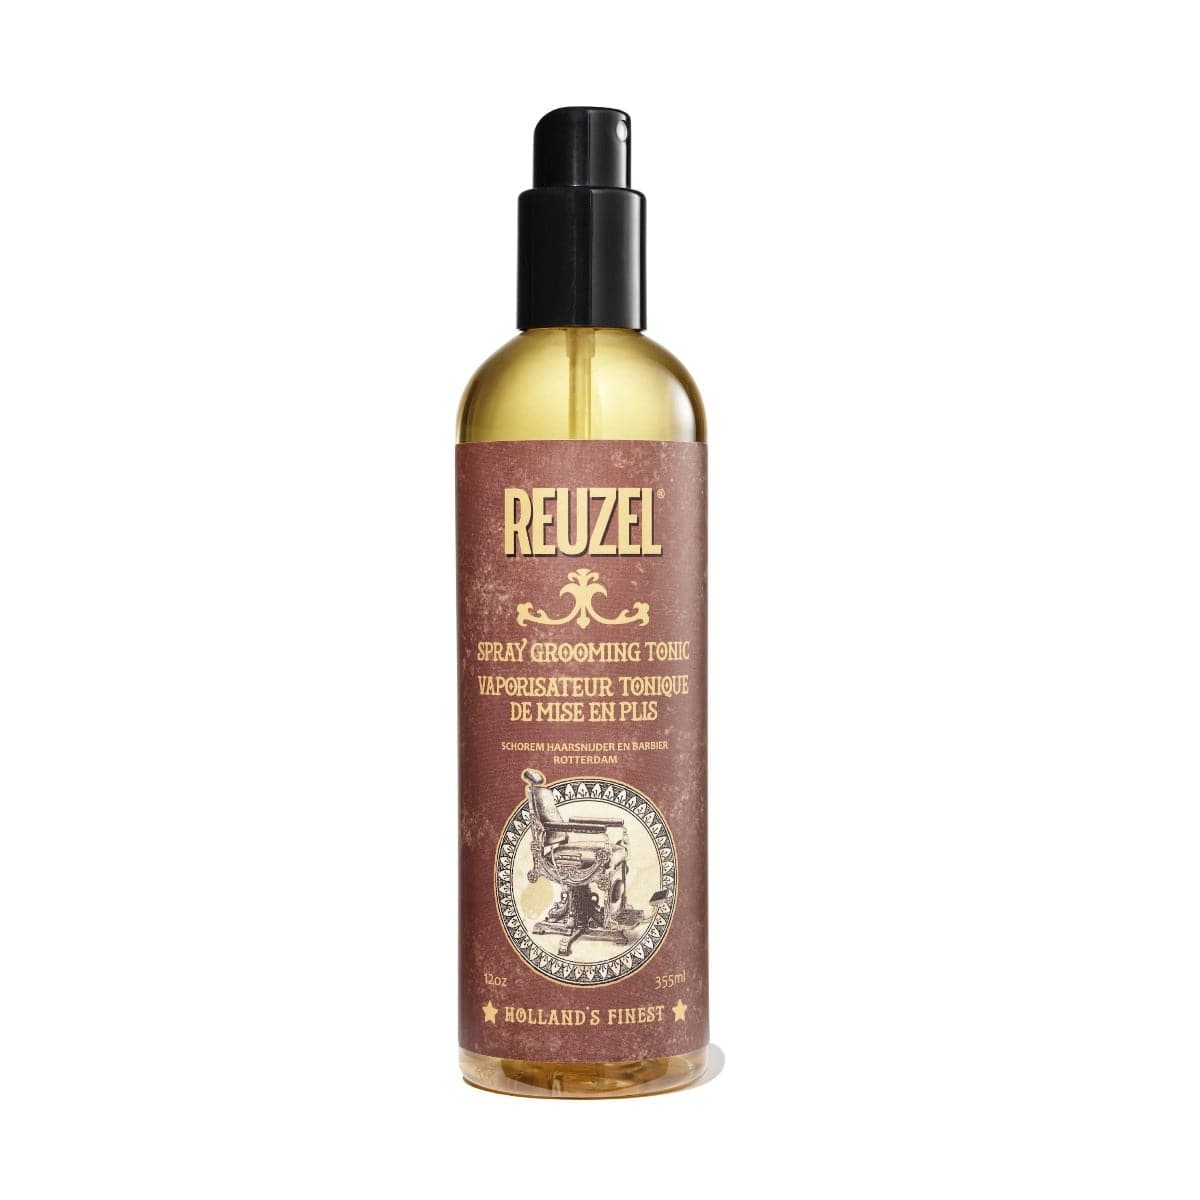 Груминг-тоник спрей для волос - Reuzel Spray Grooming Tonic